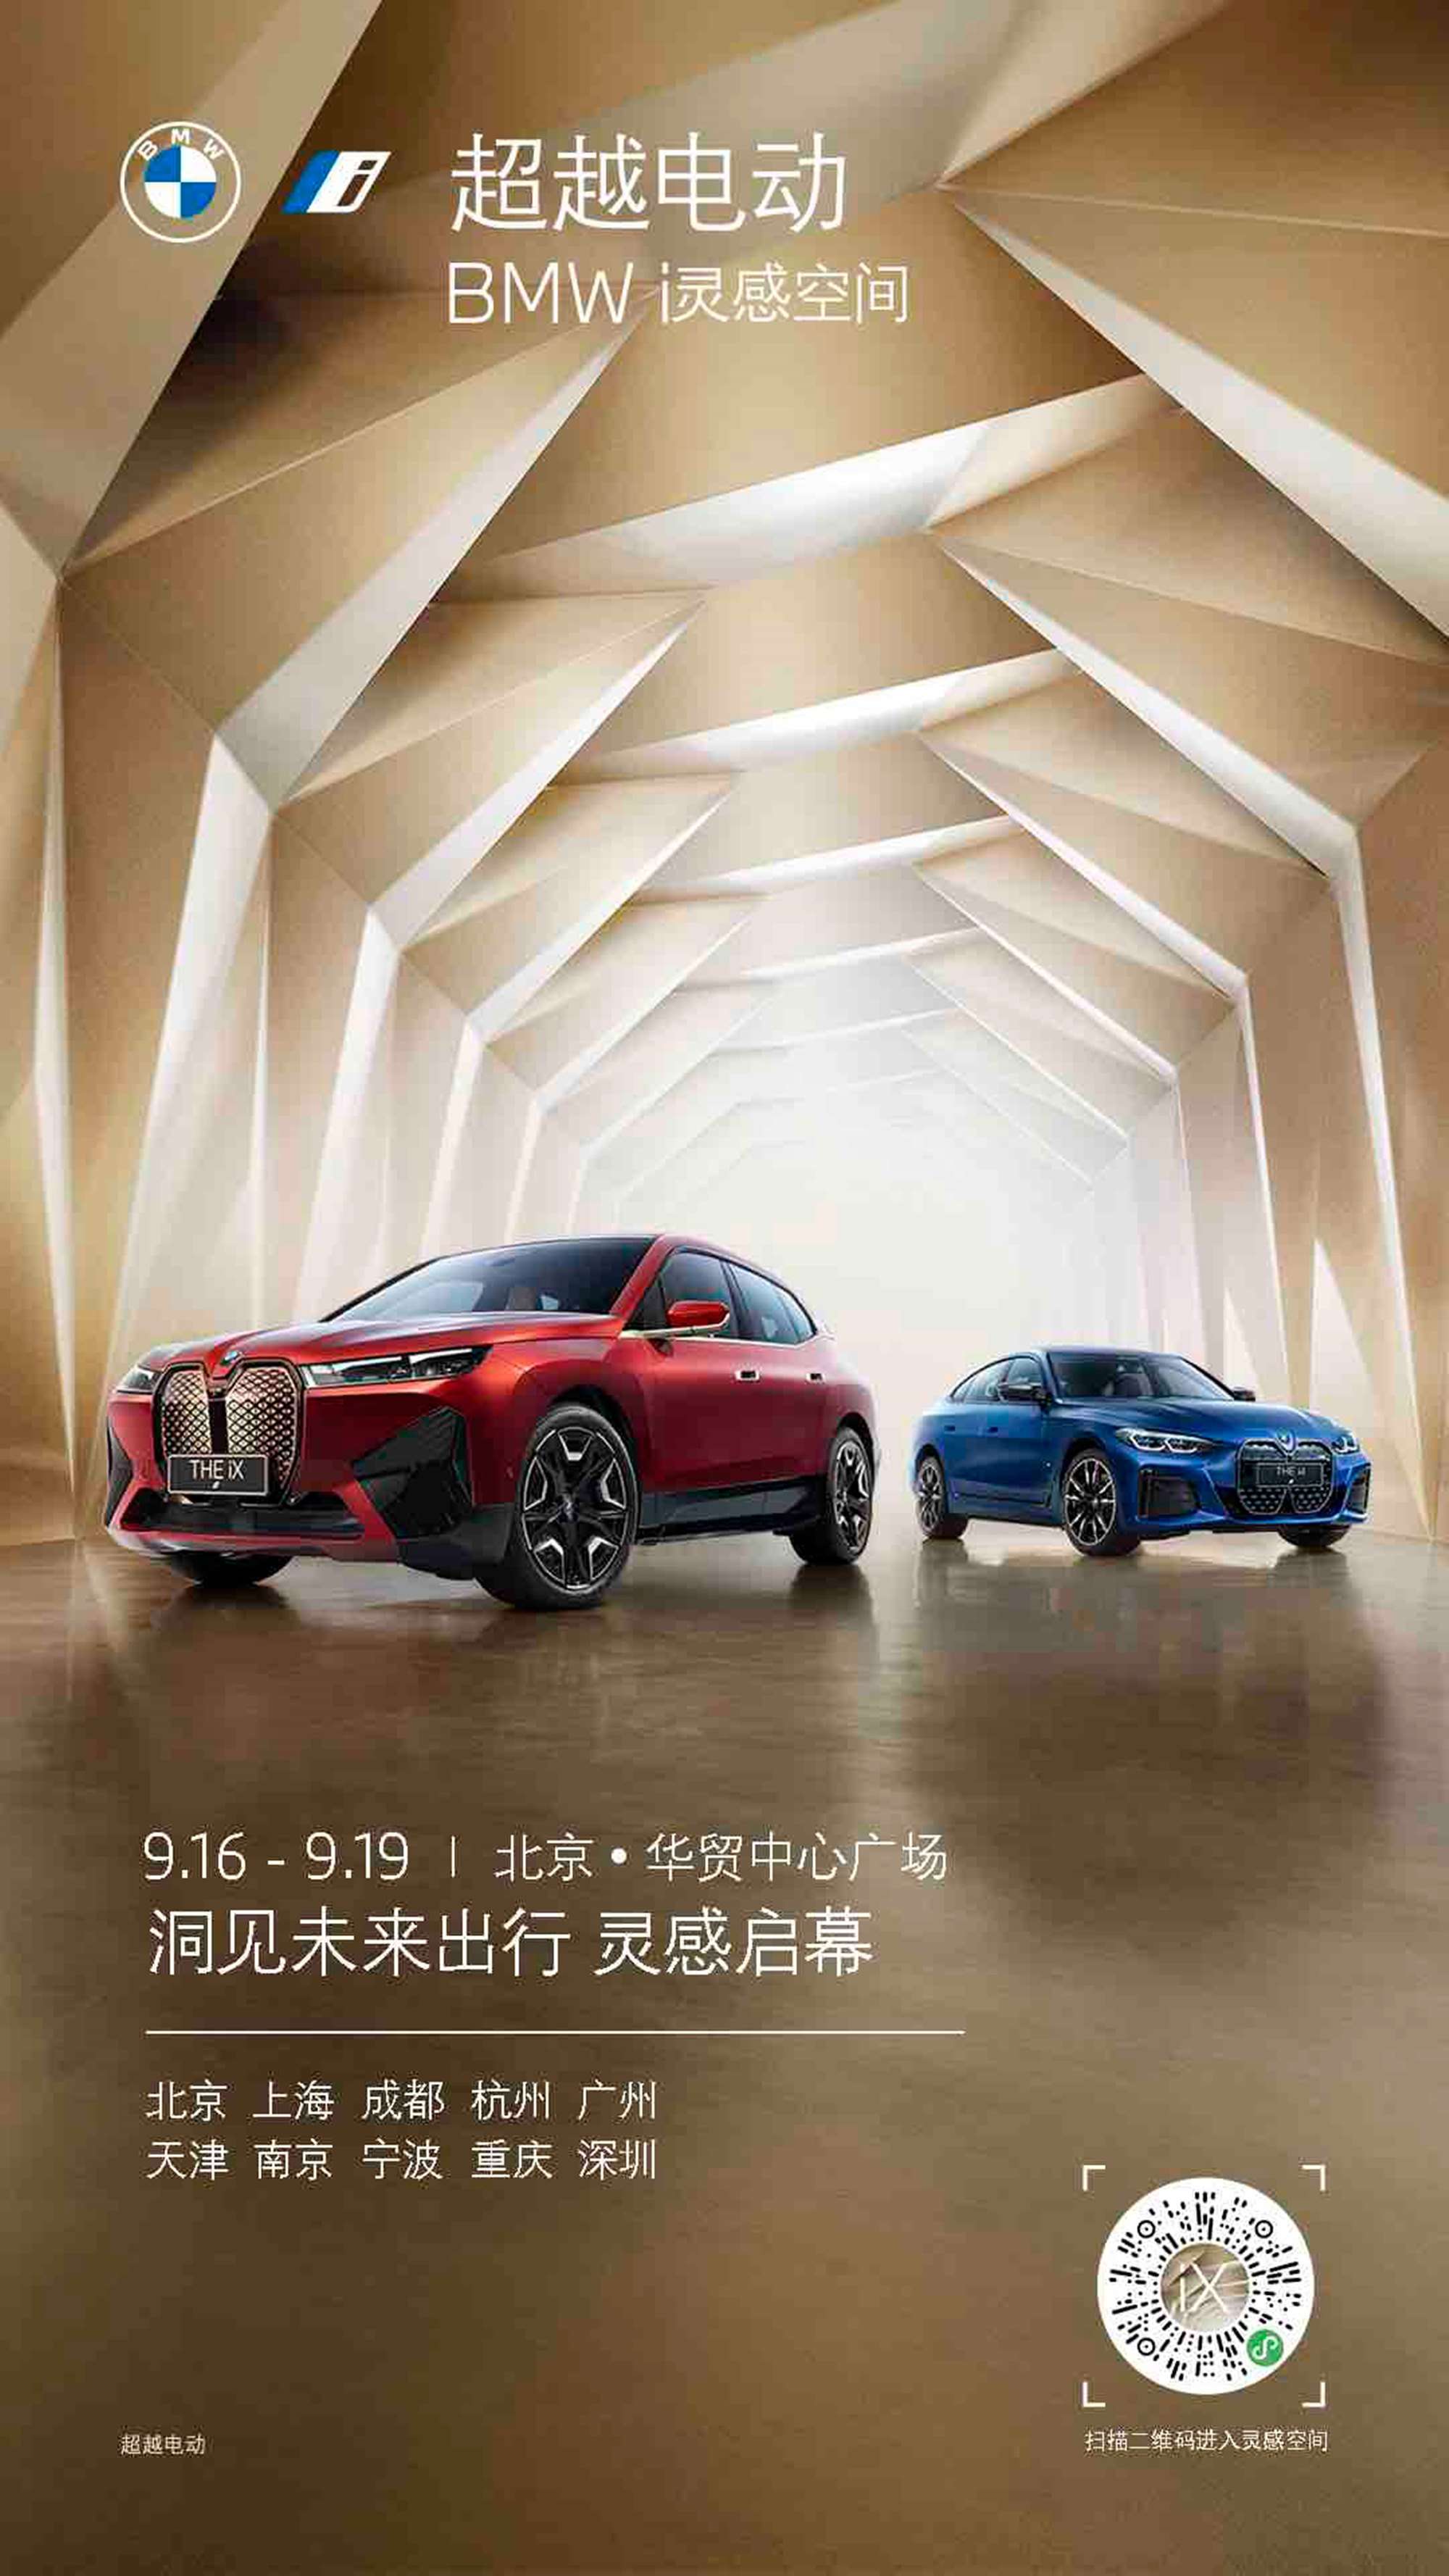 宝马“超越电动 BMW i灵感空间”落地北京 